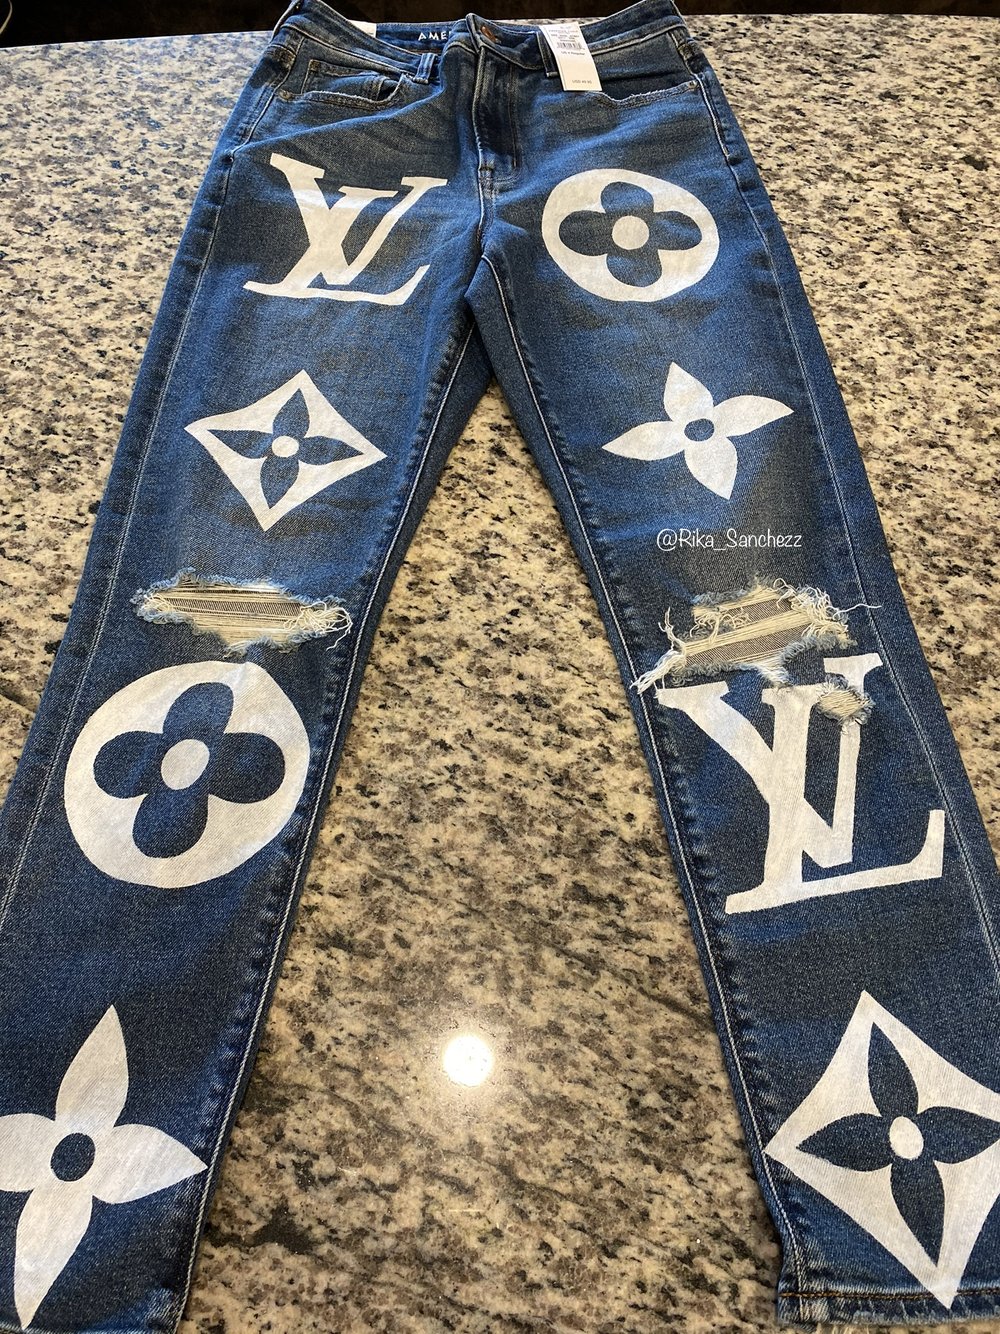 LV Jeans — Rika Sanchezz Customs